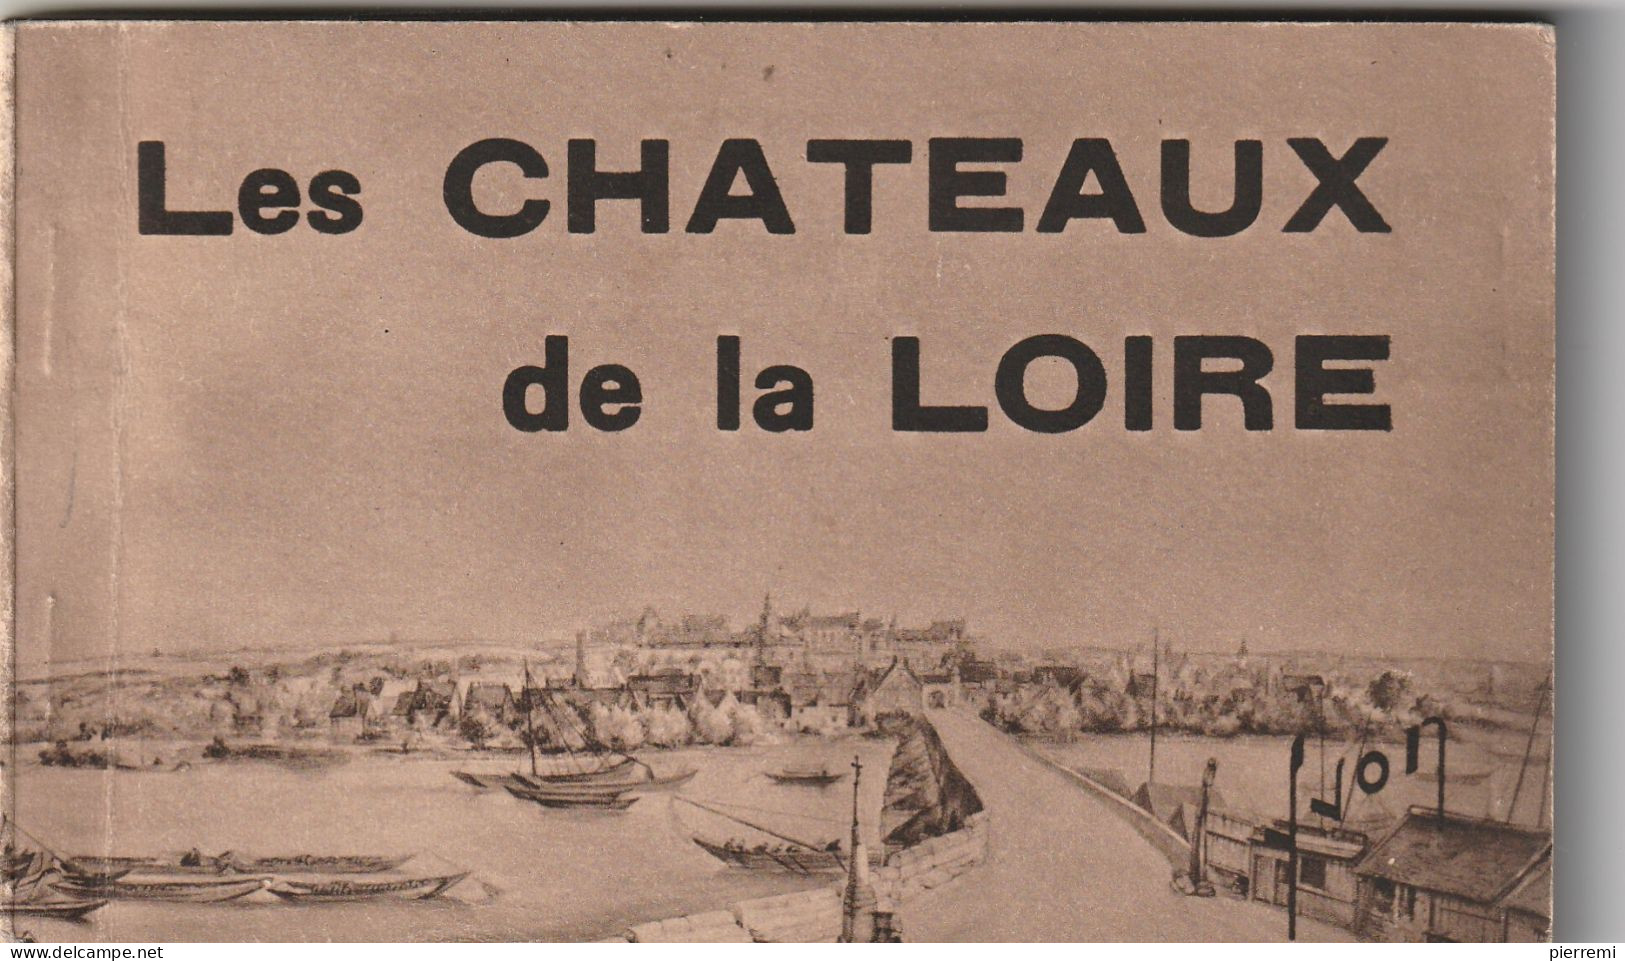 Les Chateaux De La Loire   Edit  Yvon  Carnet De 20 Cartes  Cpa - Schlösser